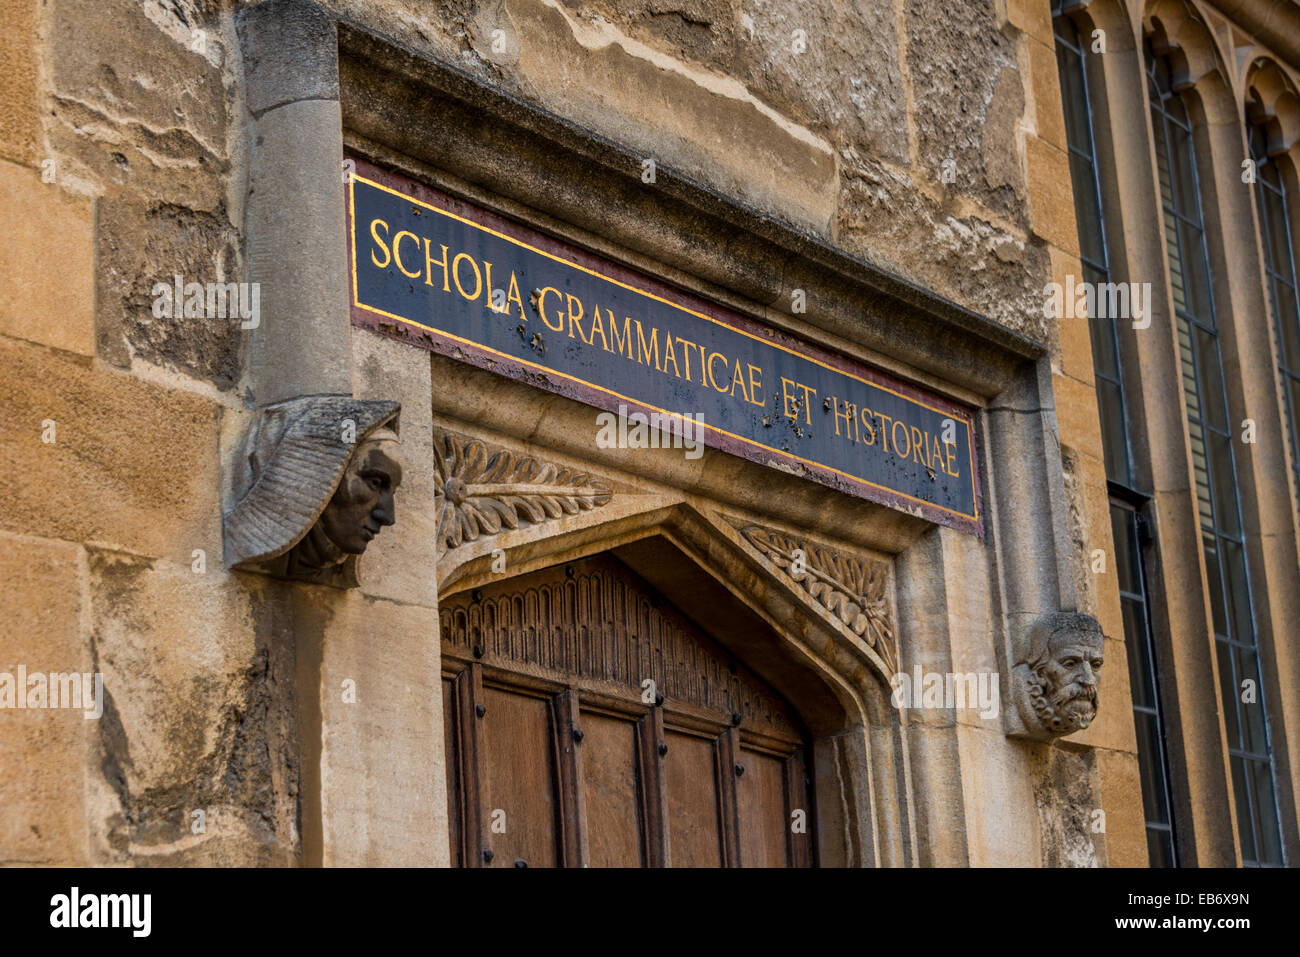 Porta nelle vecchie scuole del quadrangolo di la Bodleian Library per Schola Grammaticae et Historiae - la grammatica e la storia Foto Stock